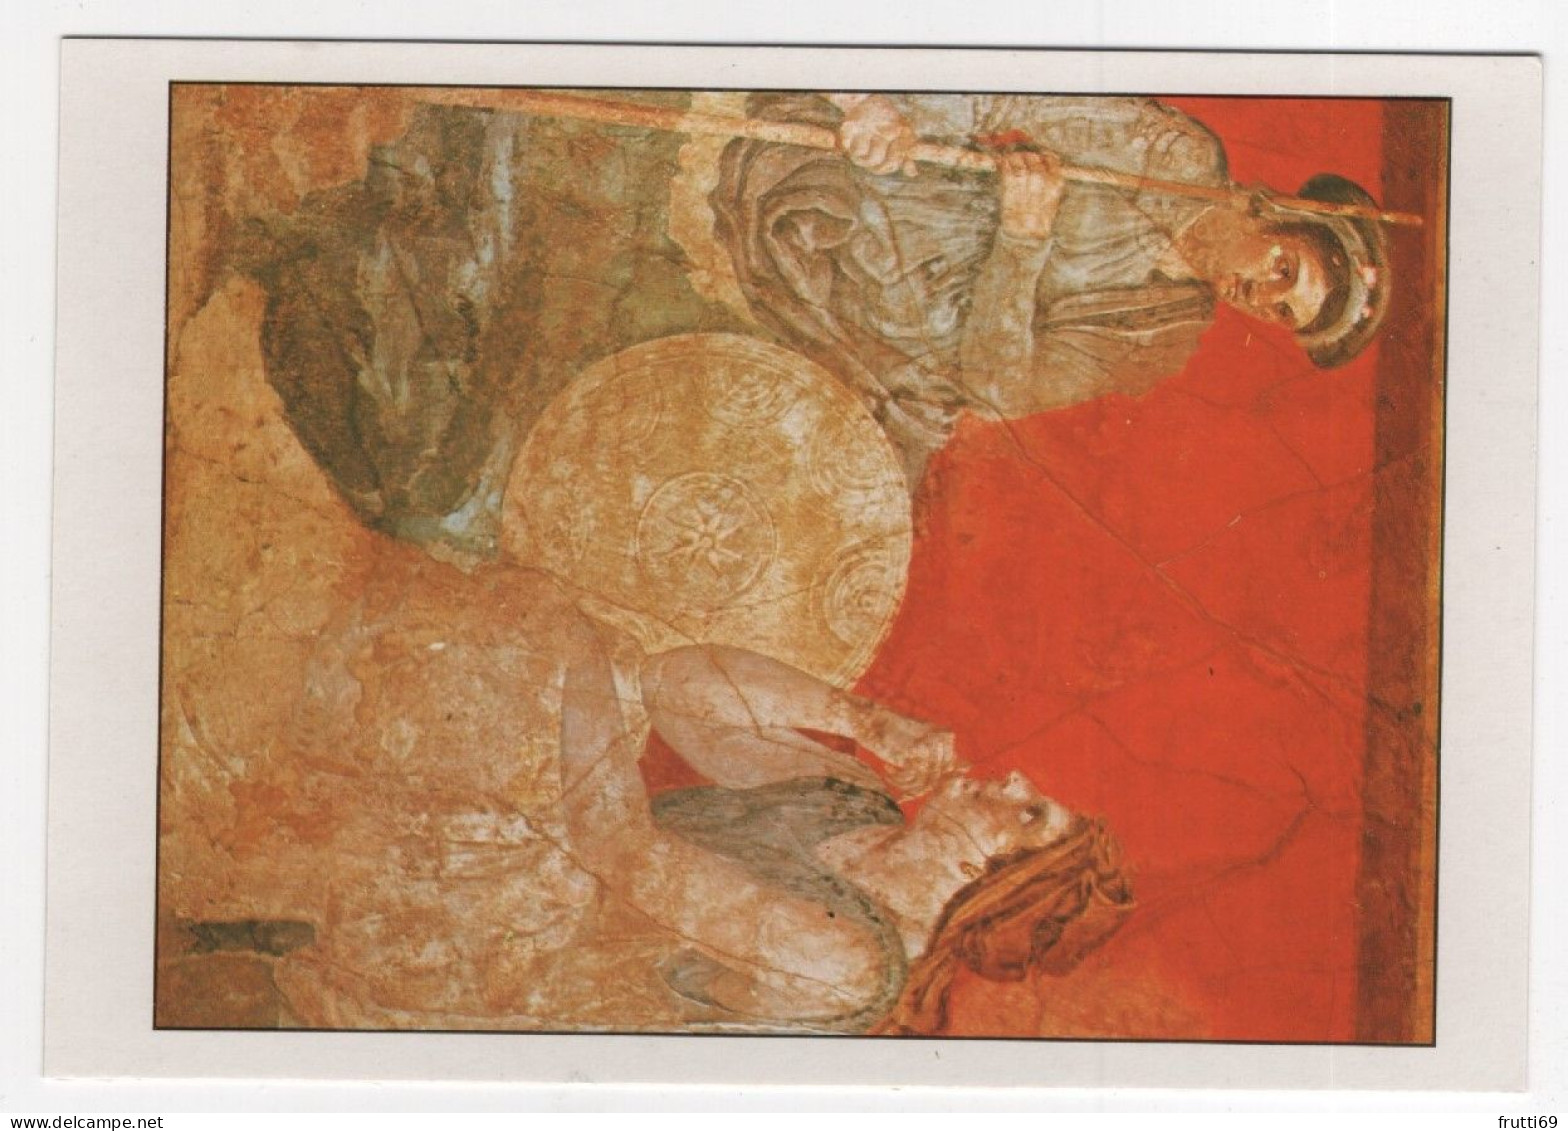 AK 210241 ART / PAINTING ... - Römische Kunst - Erste Augustinische Epoche, Pompej - Anonym - Historische Szene - Antike